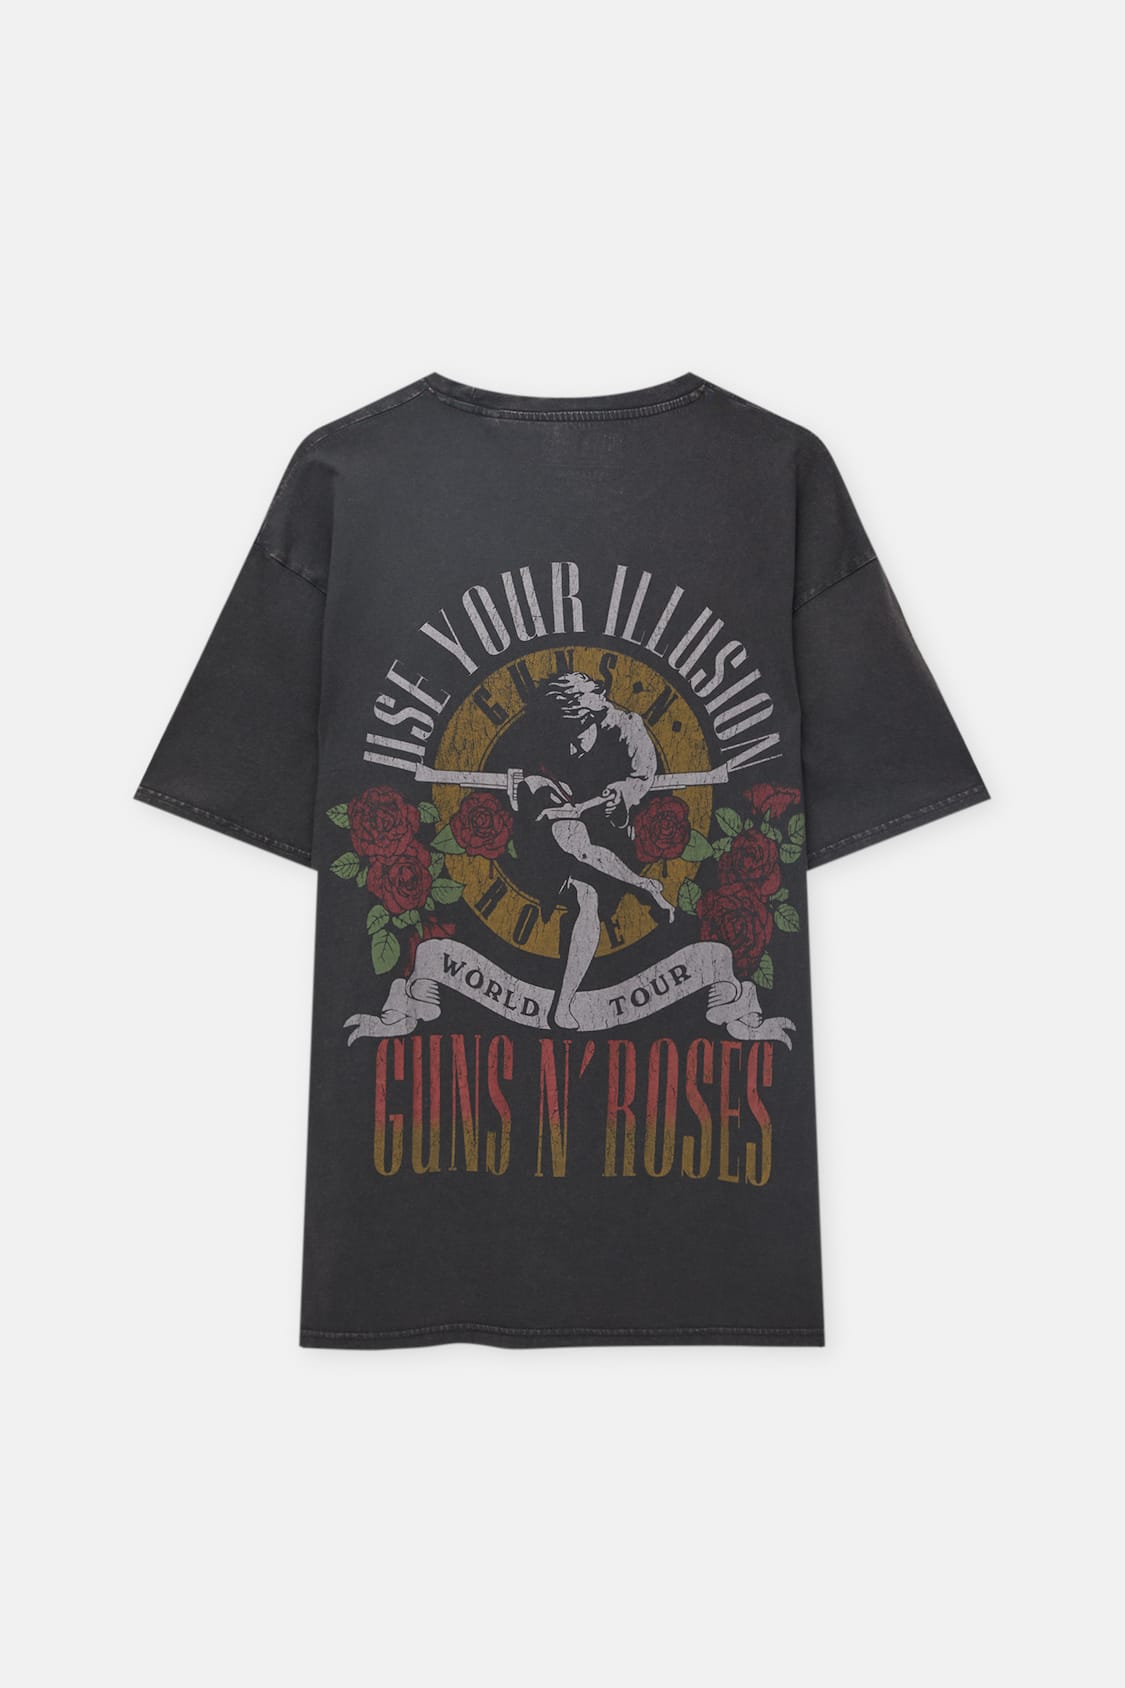 Vilje Entreprenør Forkæl dig Guns N 'Roses World Tour T-shirt - pull&bear